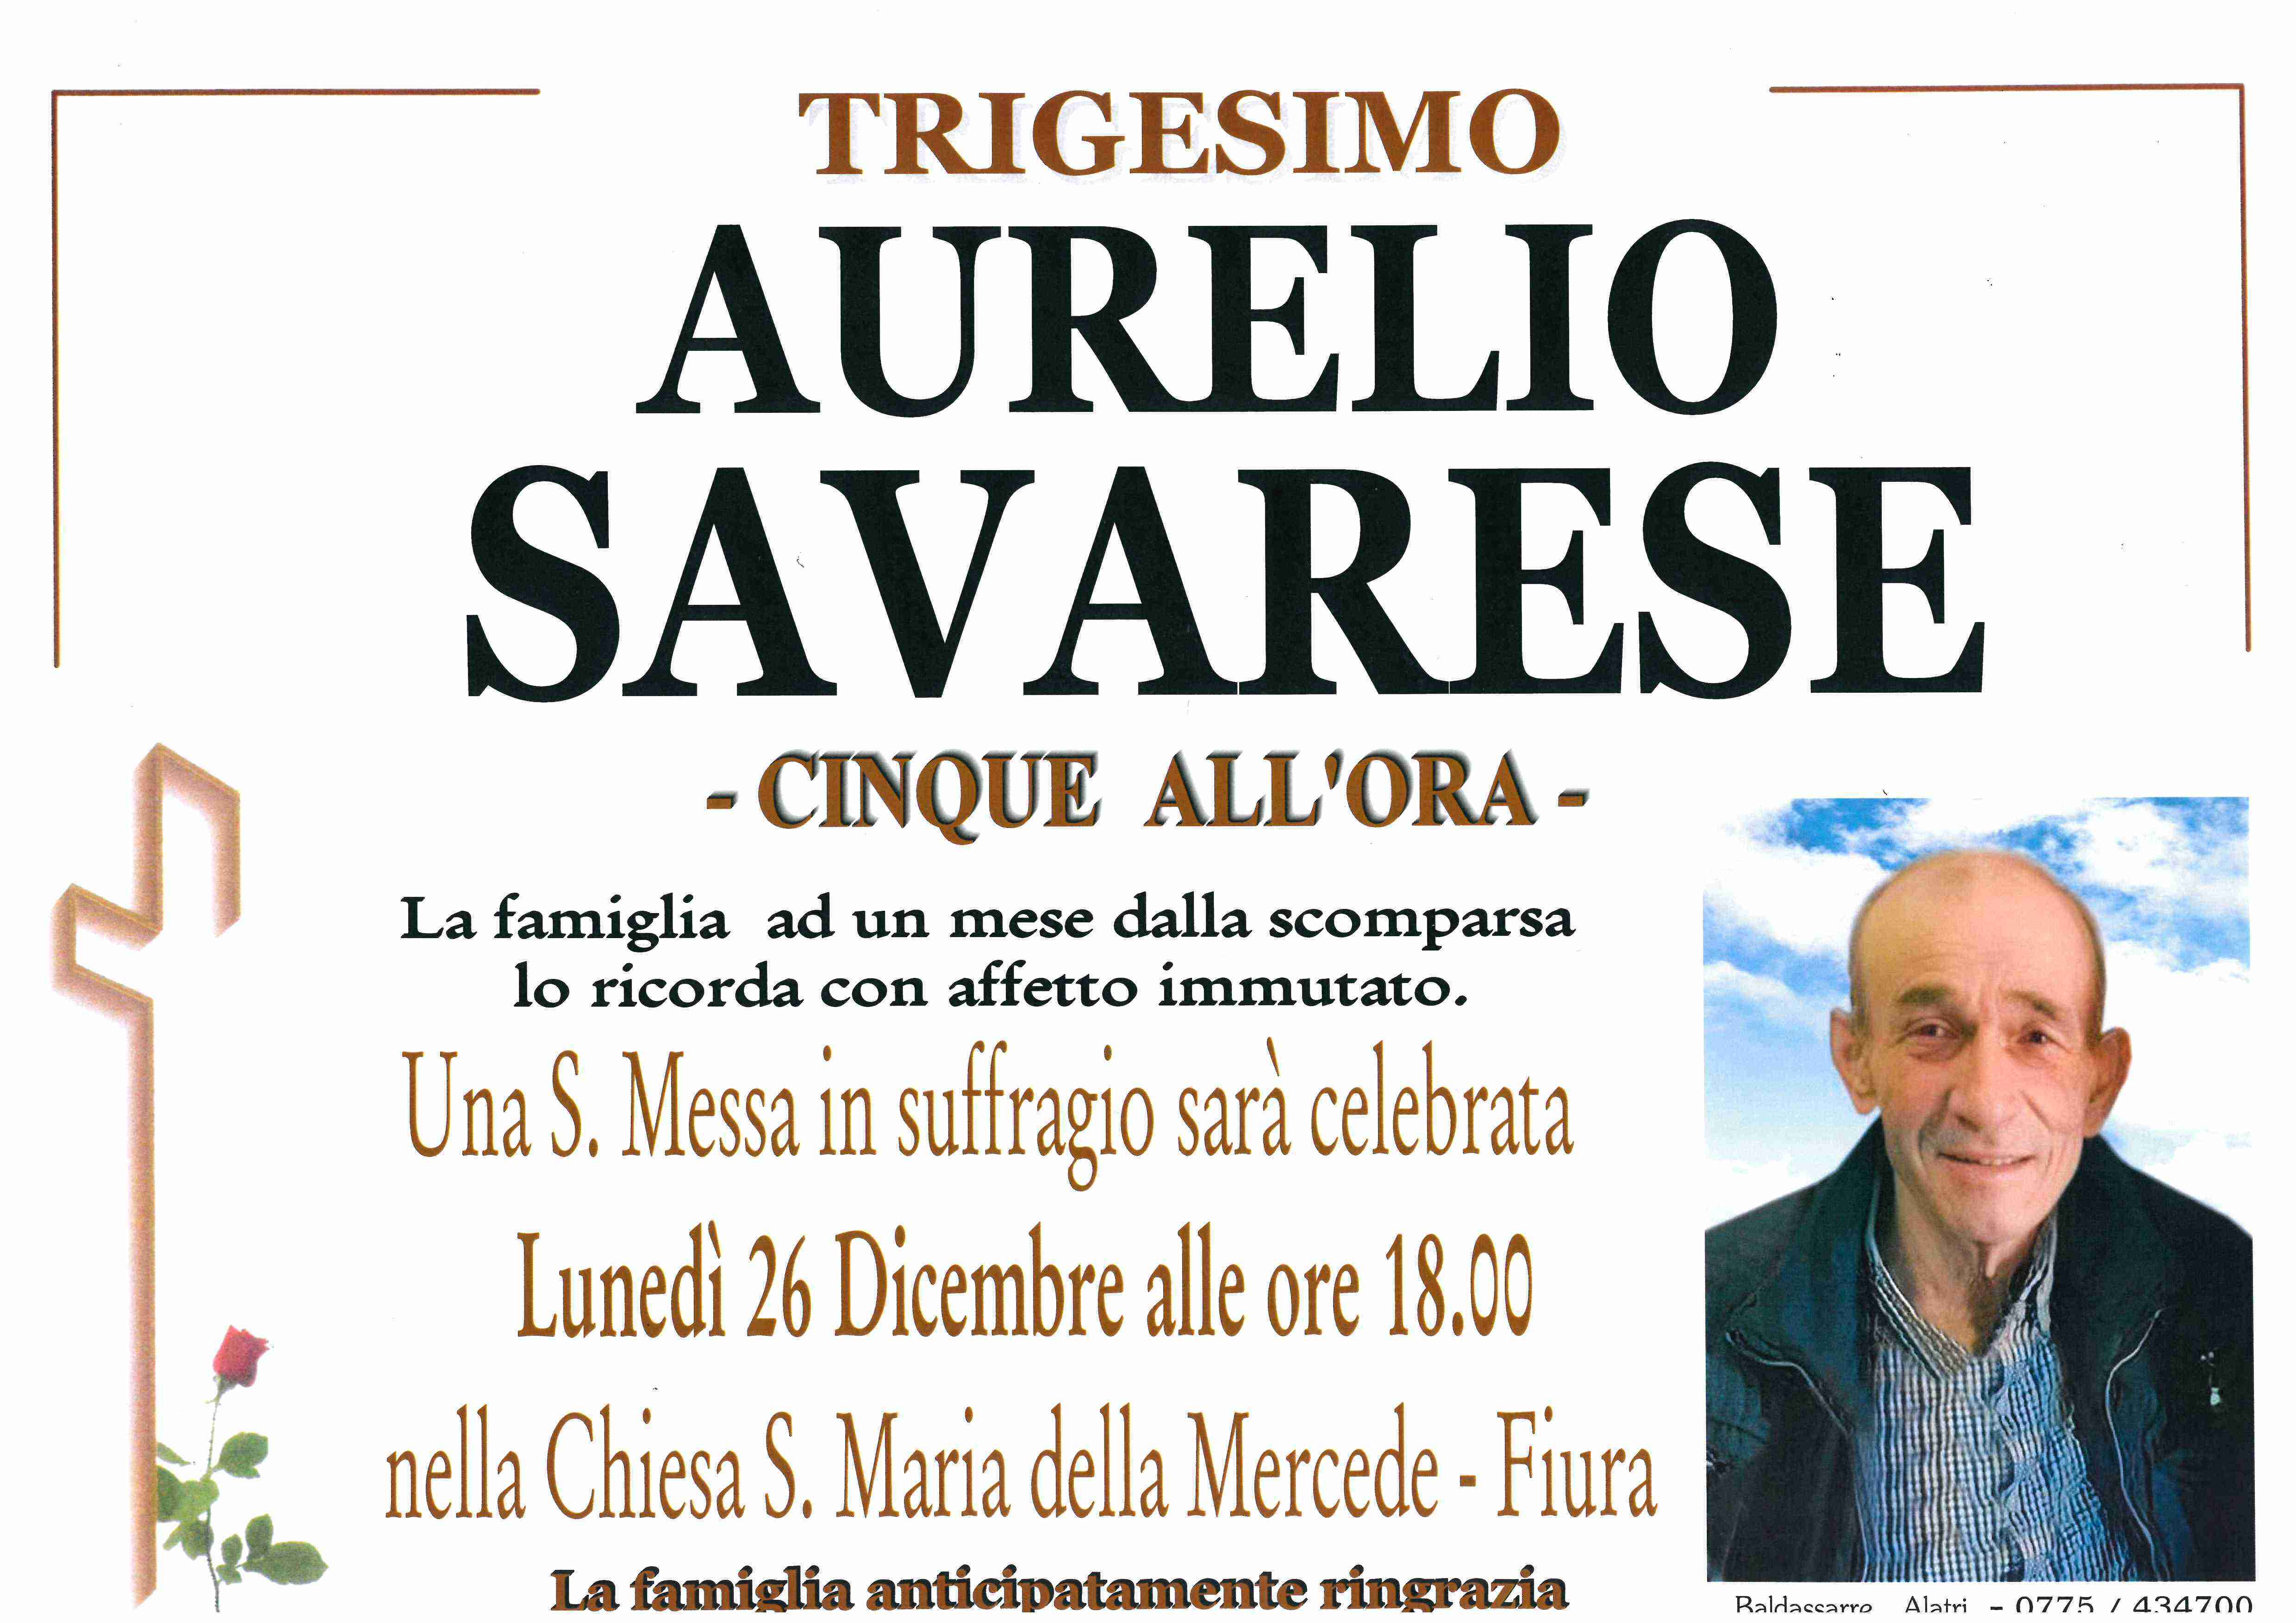 Aurelio Savarese